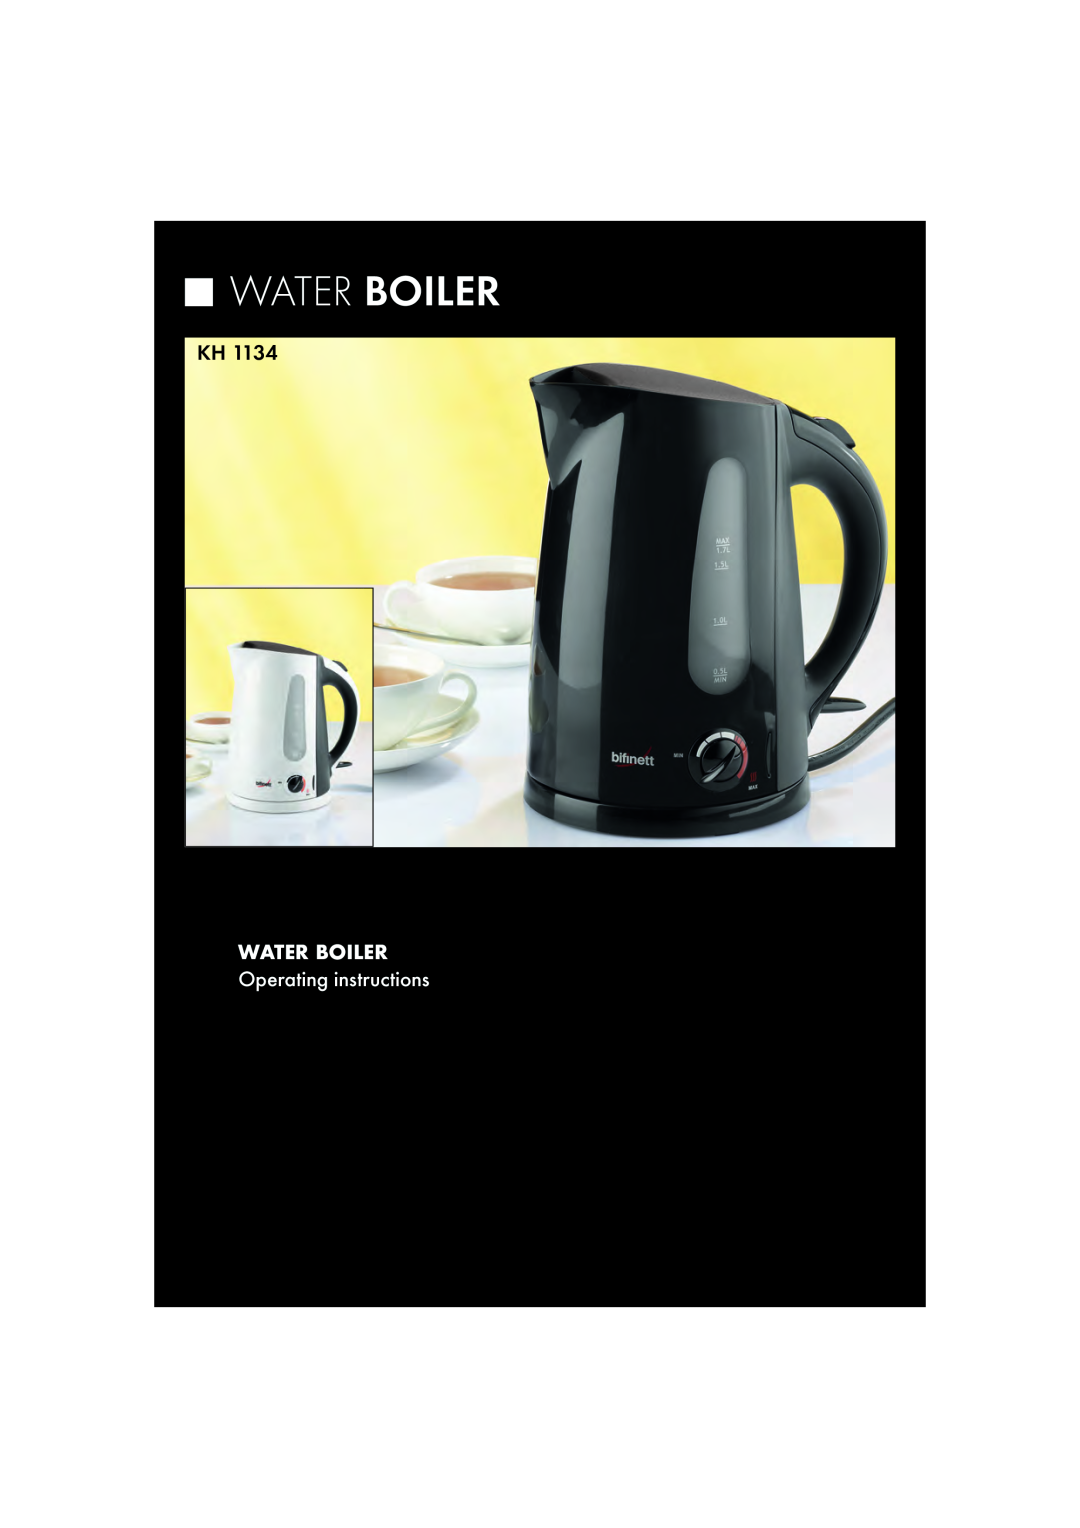 Kompernass KH 1134 manual WATER BOILER Operating instructions, Water Boiler 